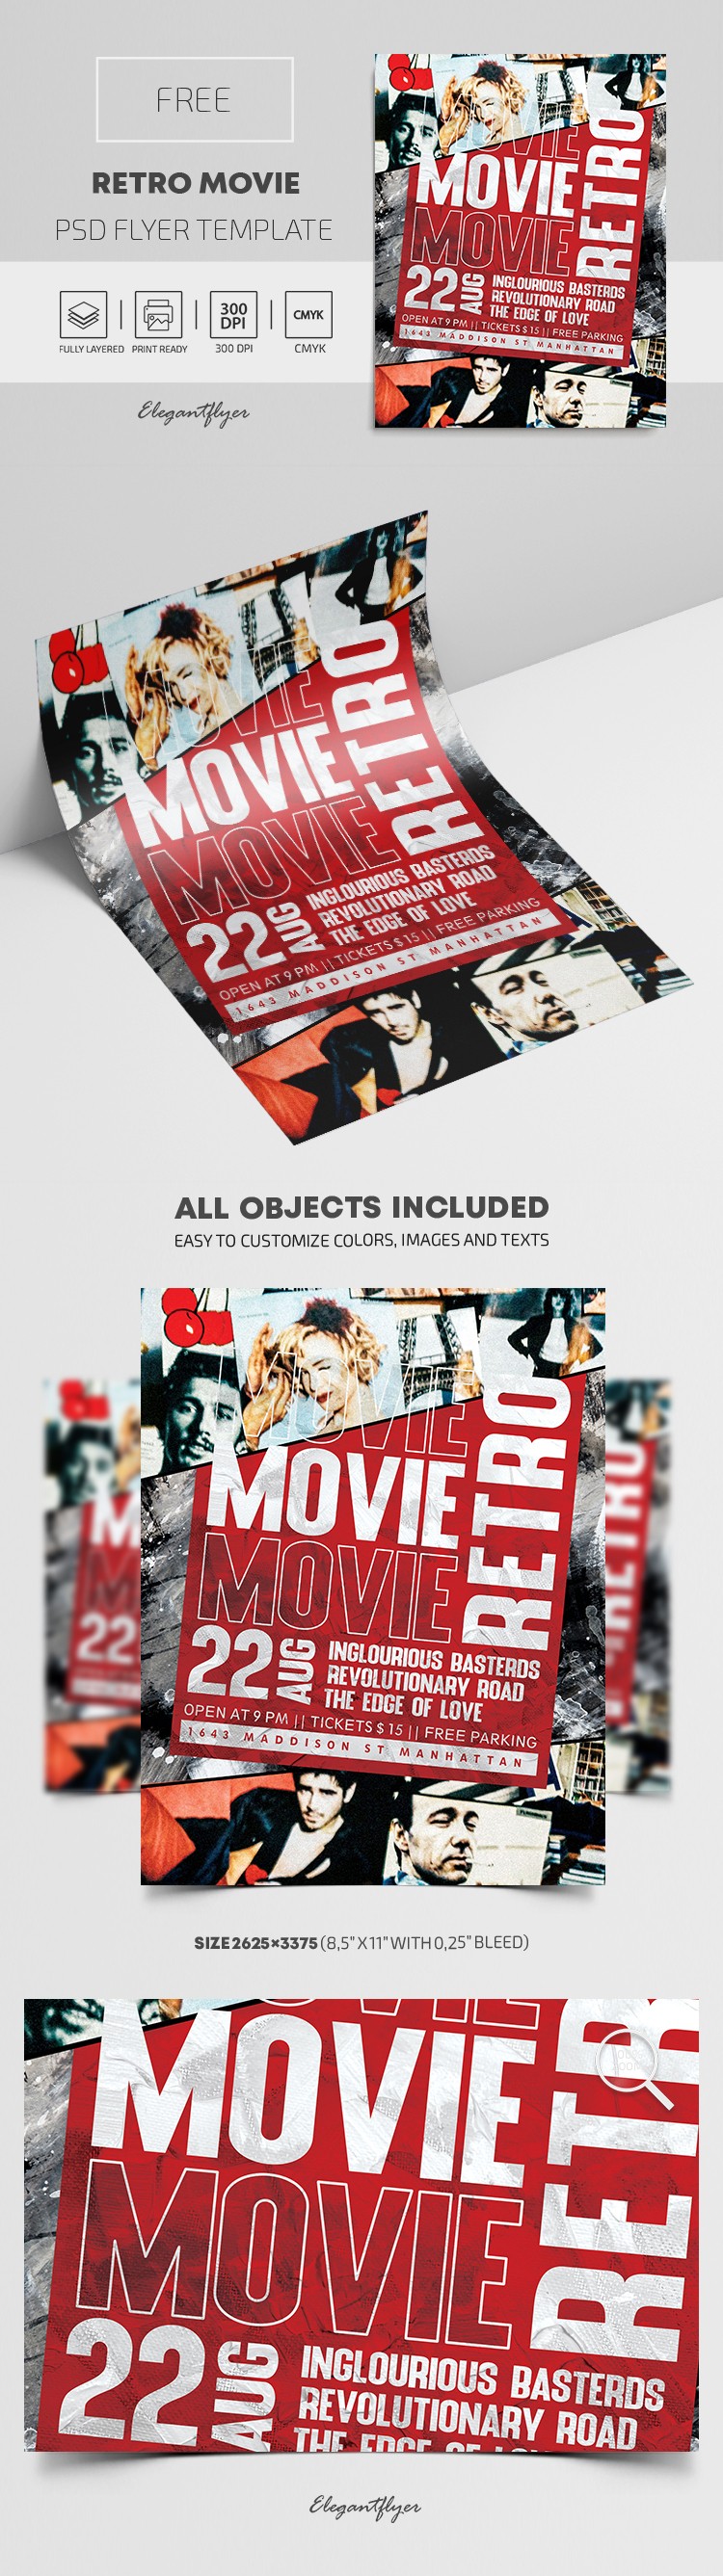 Retro Movie Flyer by ElegantFlyer